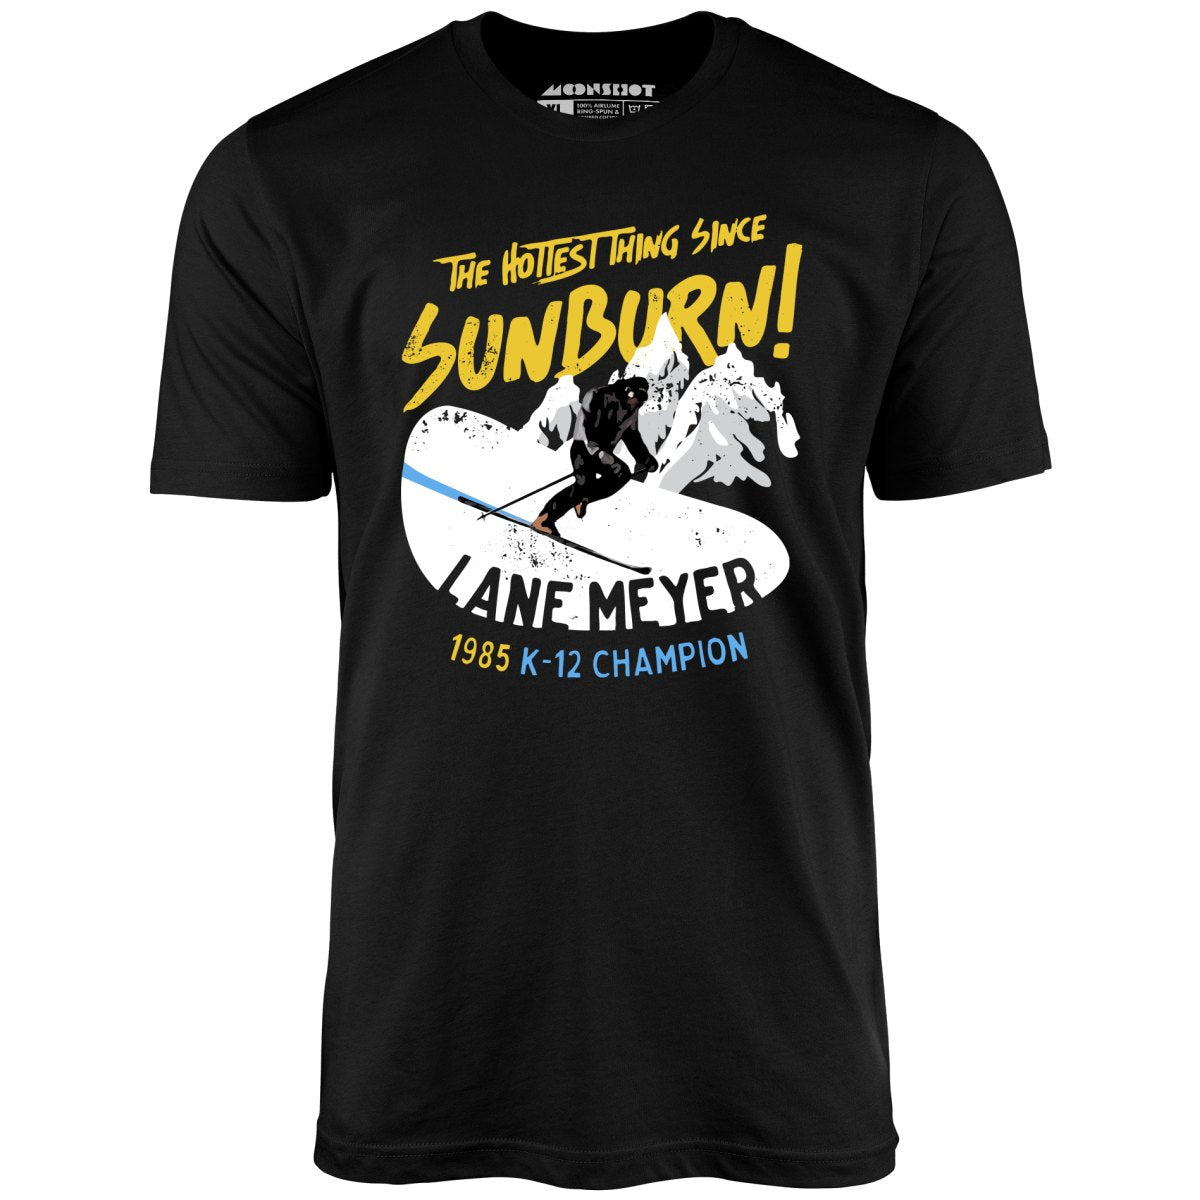 Lane Meyer - The Hottest Thing Since Sunburn - Unisex T-Shirt